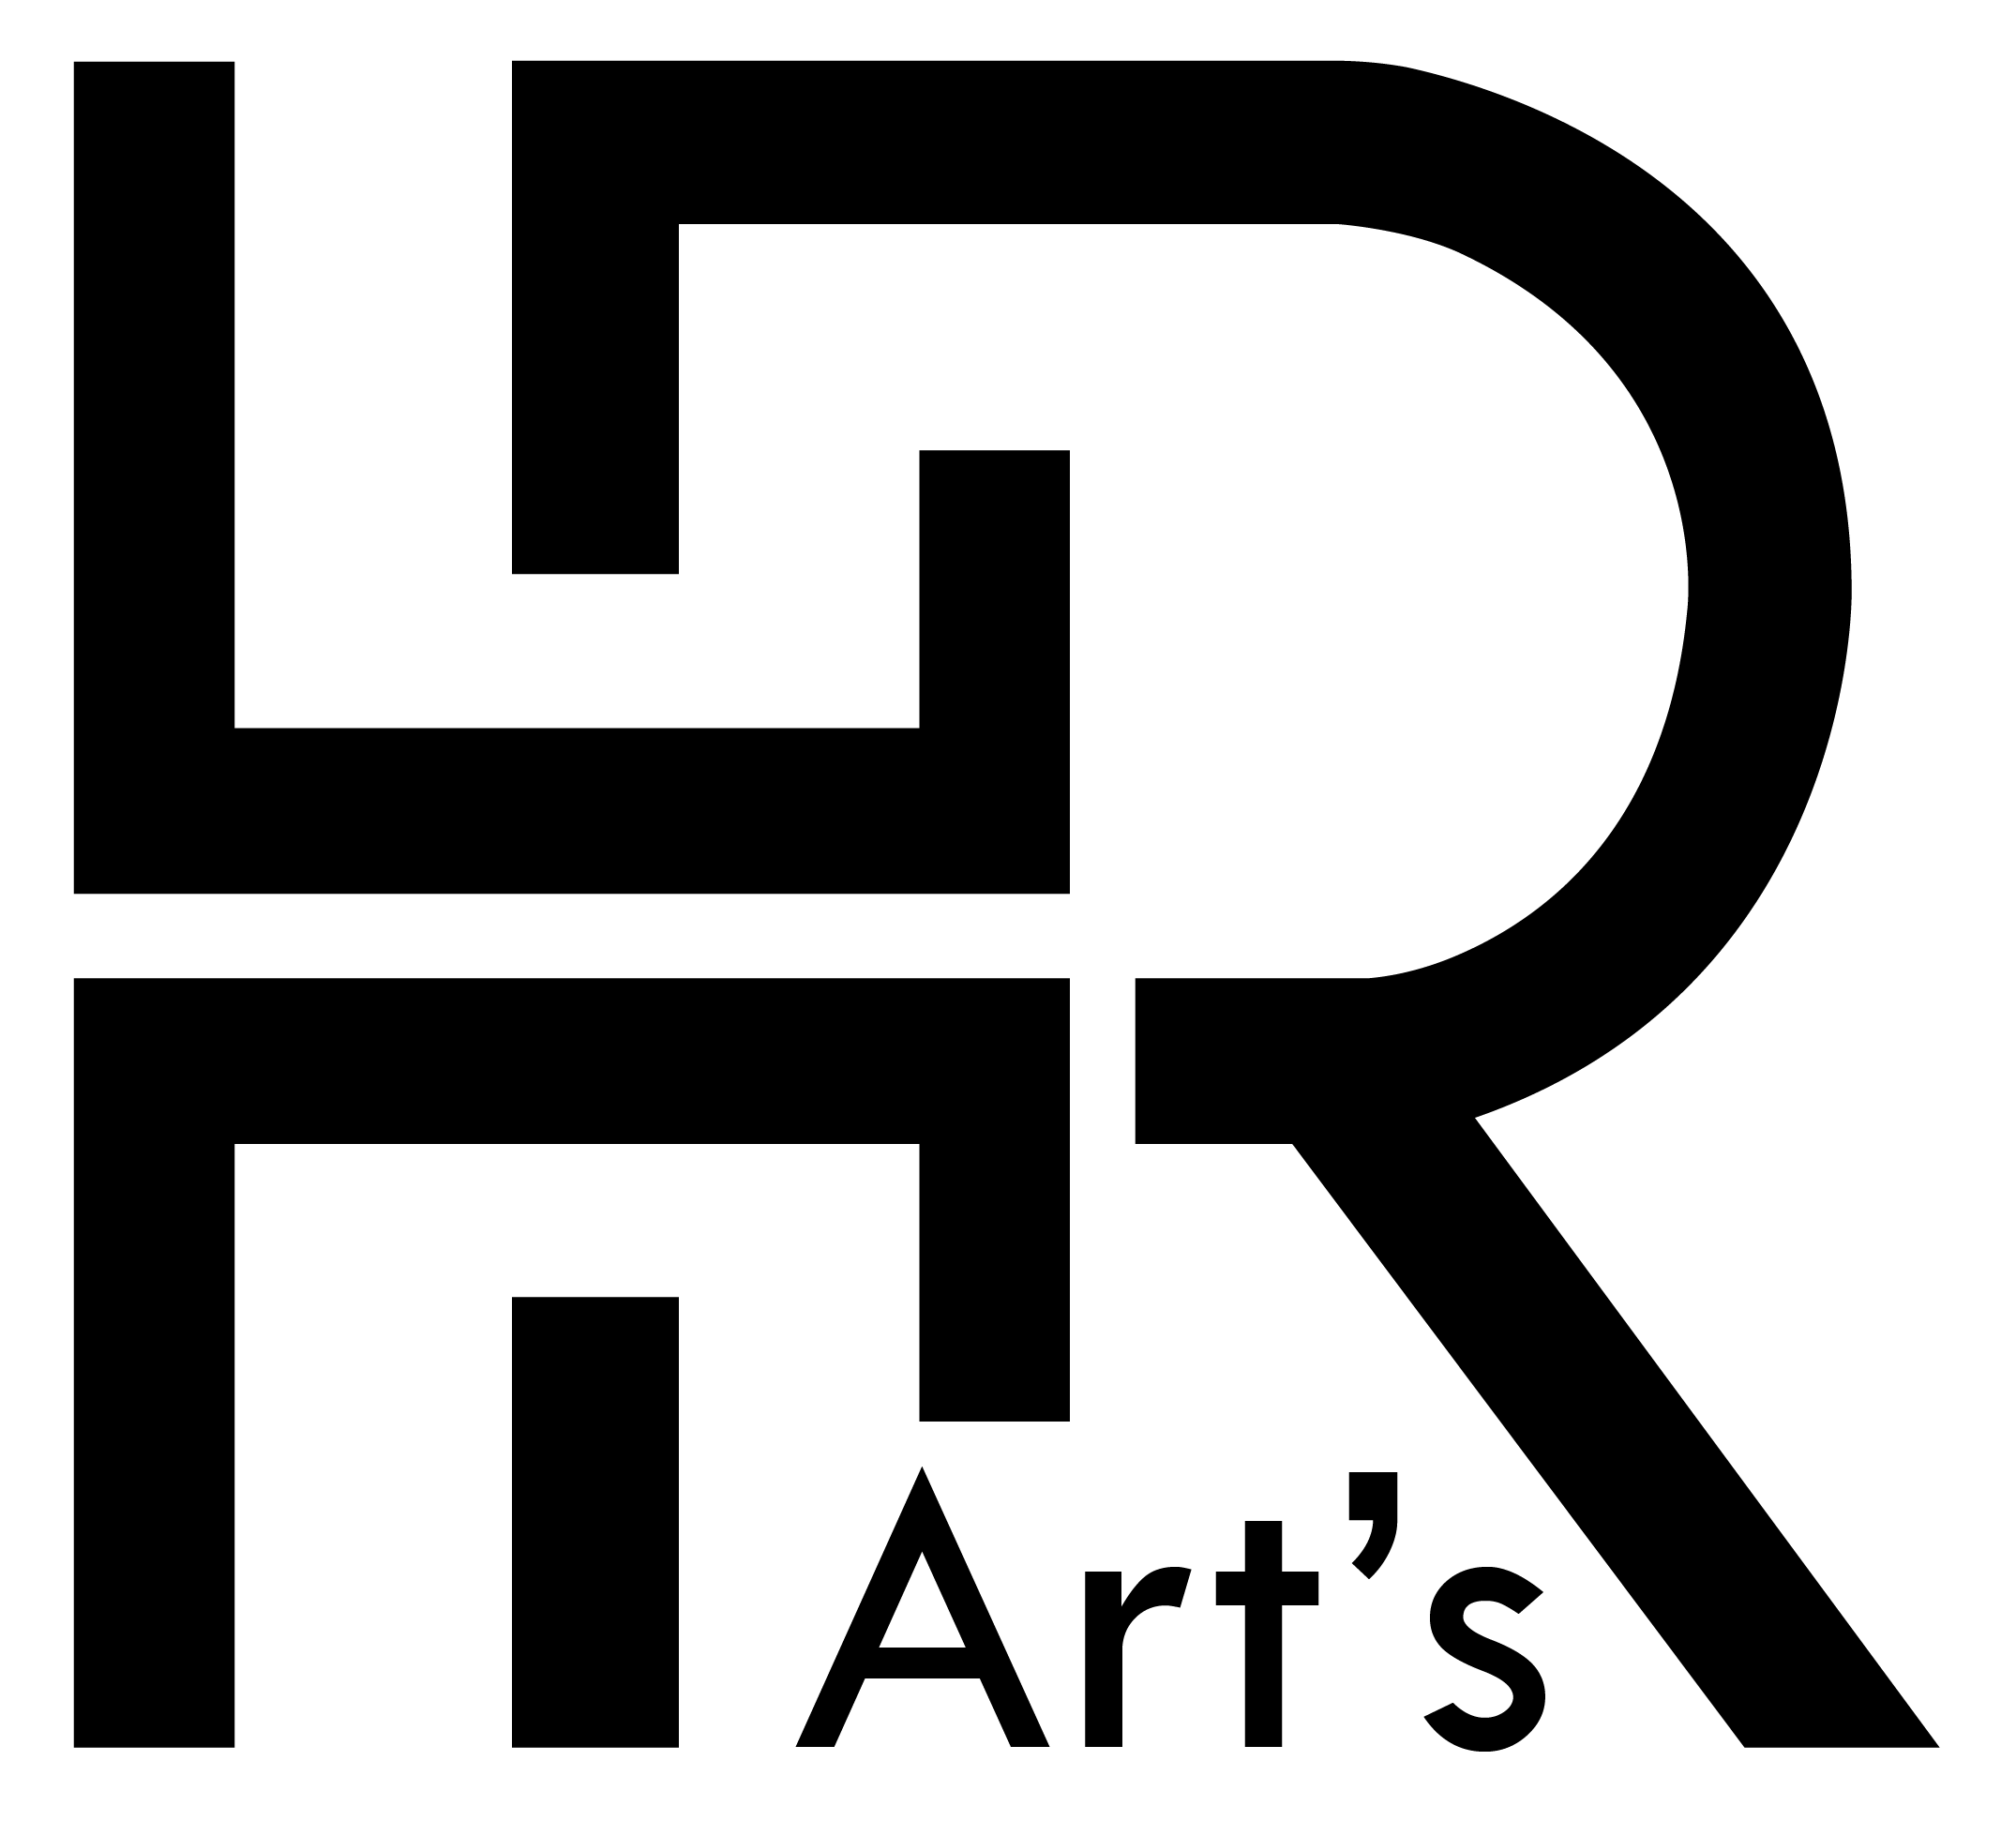 hrarts-logo